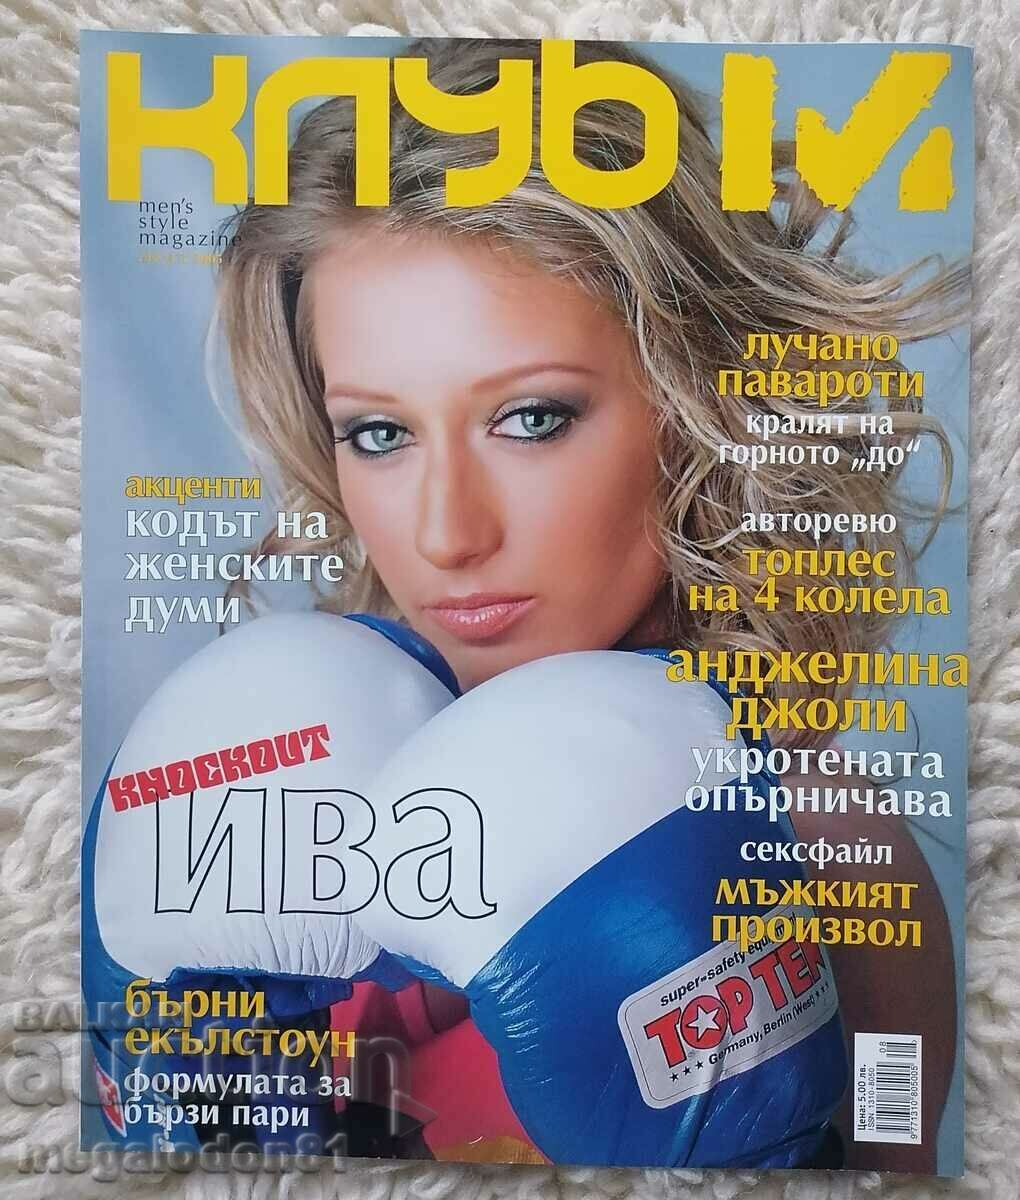 Списание Клуб М, август 2005г.